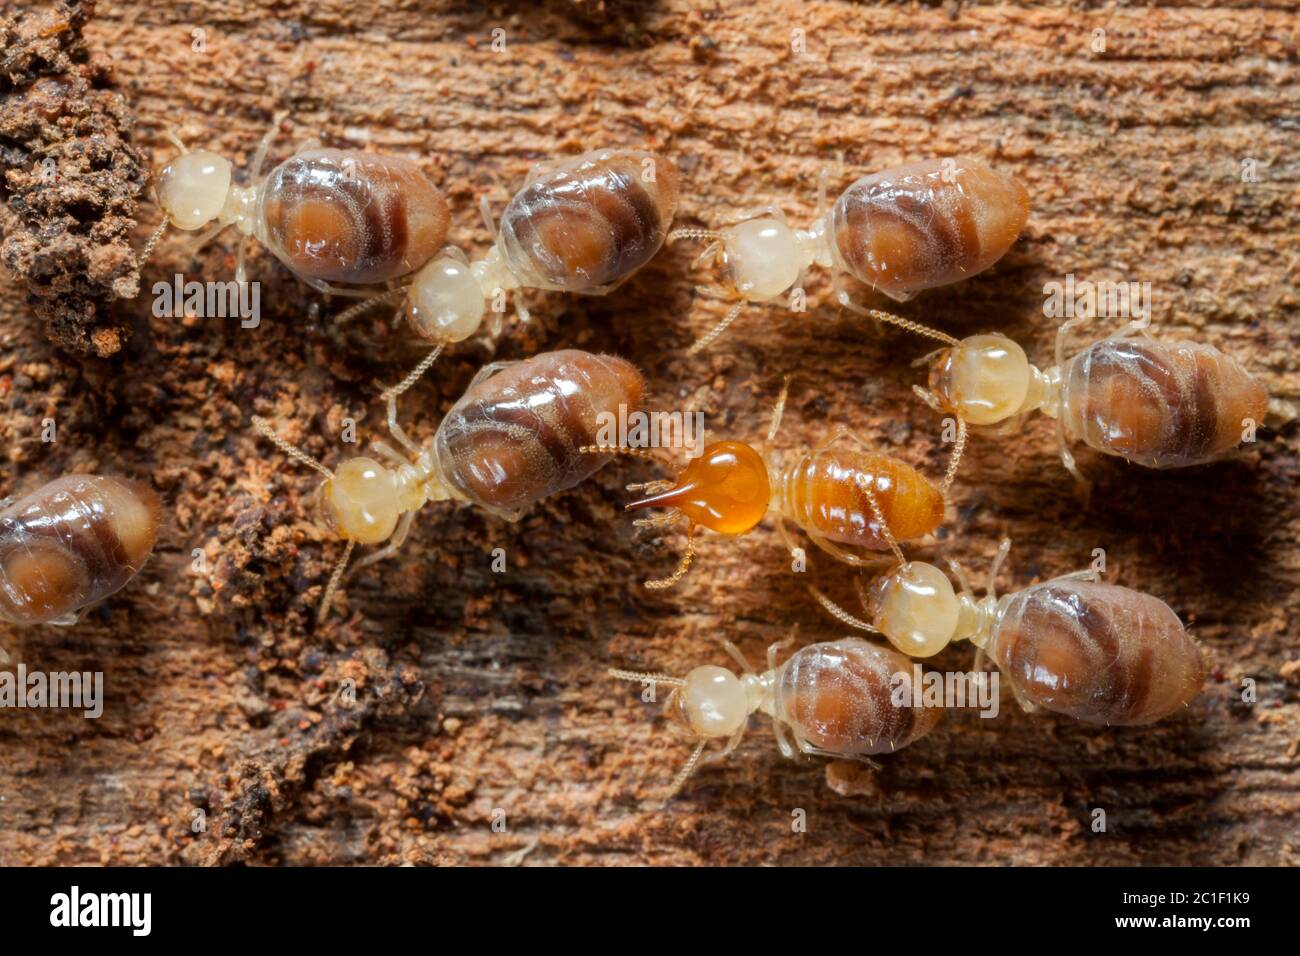 Les insectes termites dans la colonie sur le bois Banque D'Images